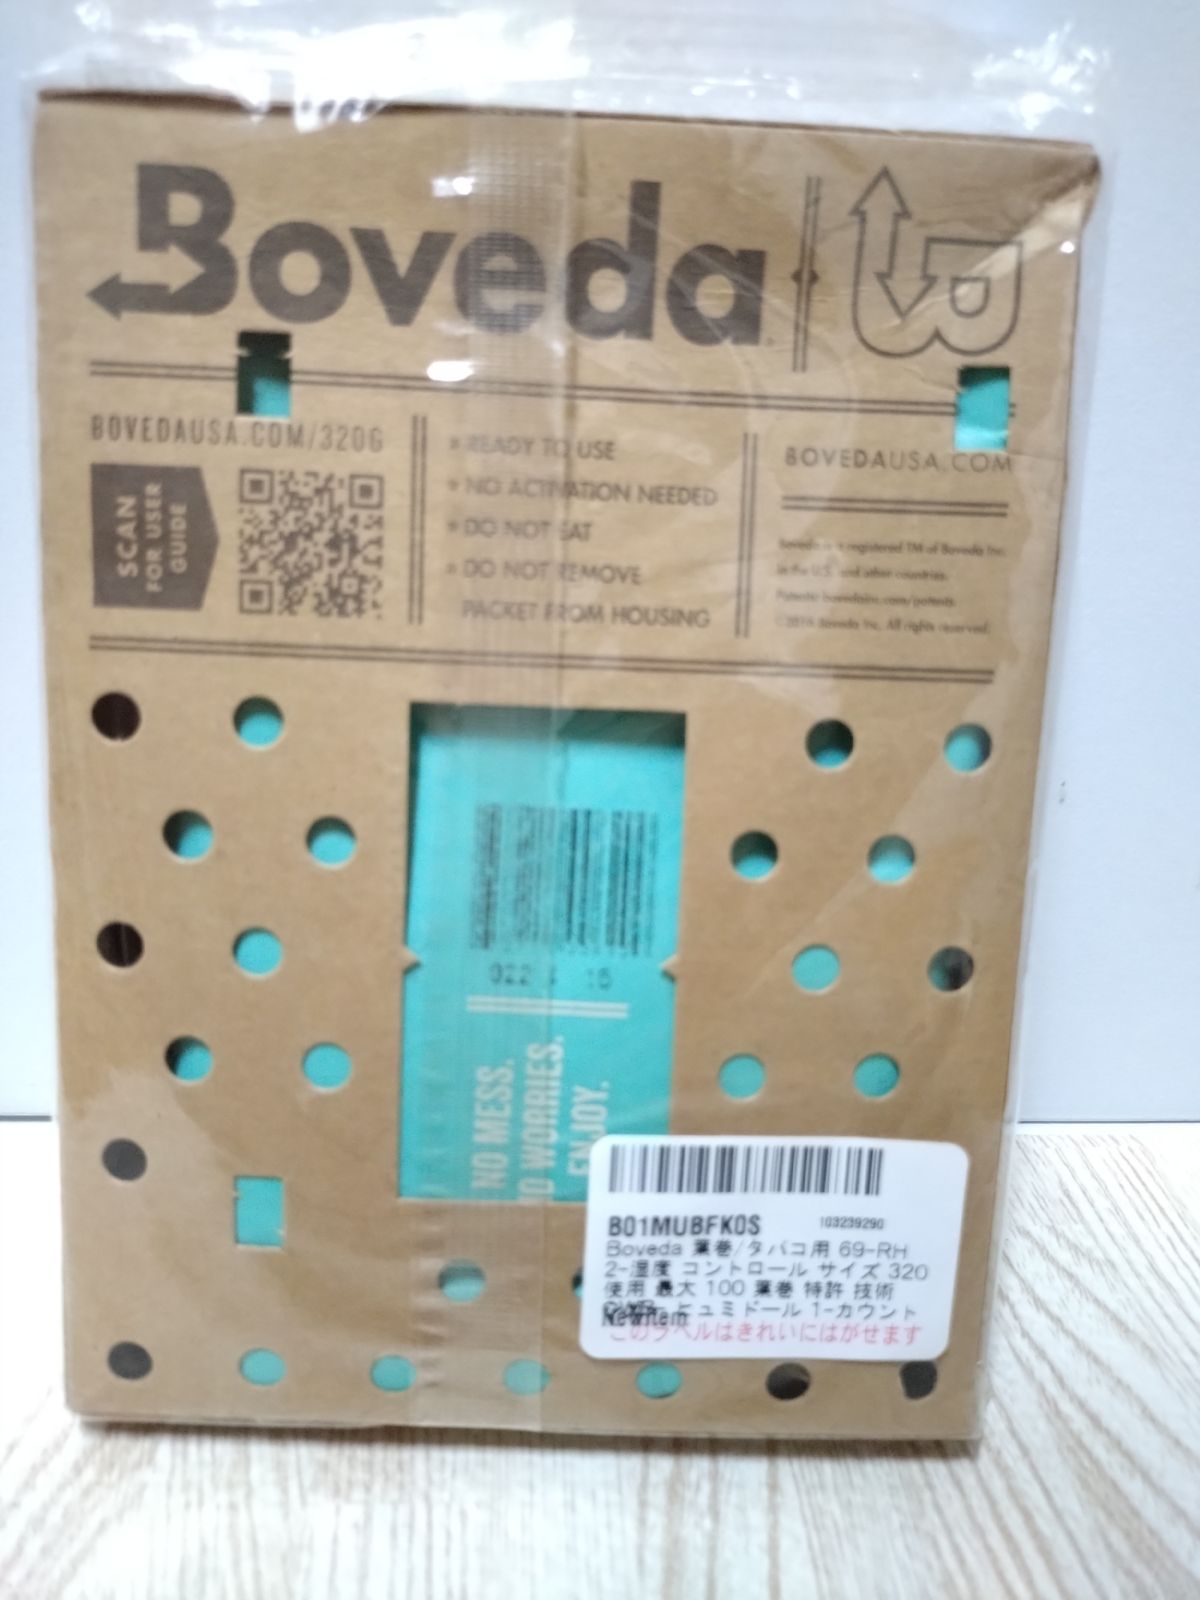 Boveda 葉巻/タバコ用 69-RH 2-湿度コントロール サイズ 320